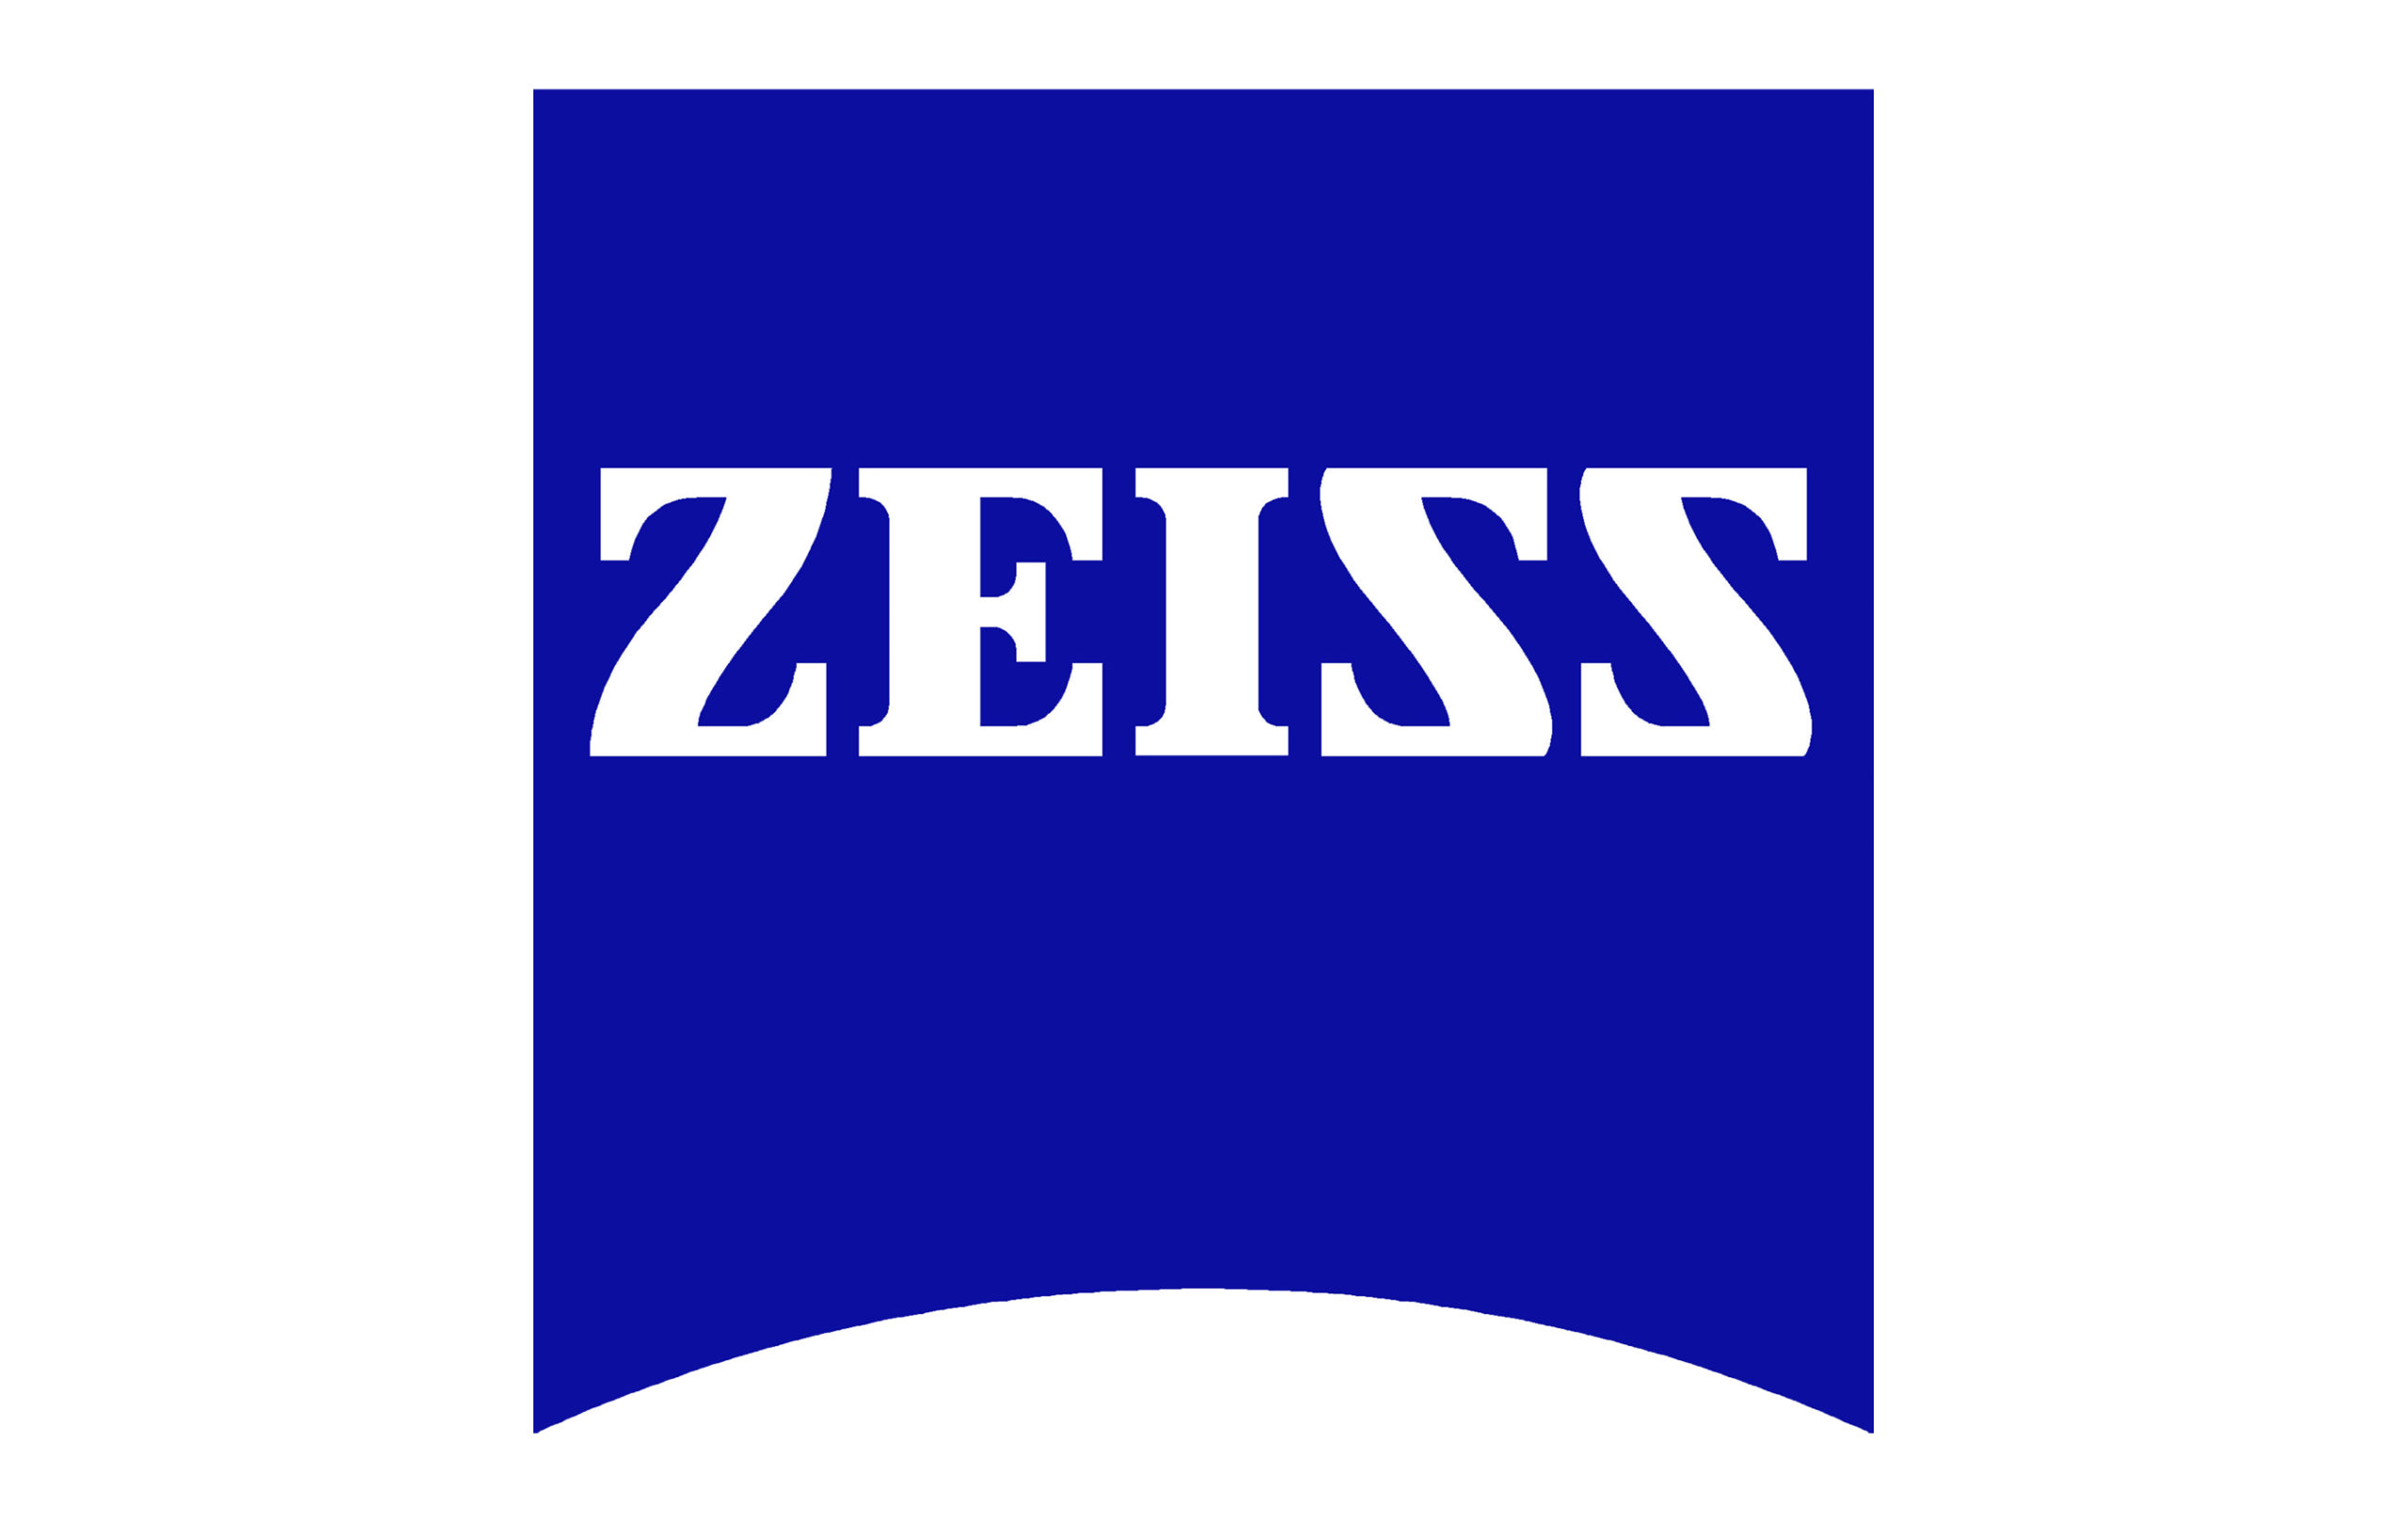 Logo Zeiss.jpg.558 scaled